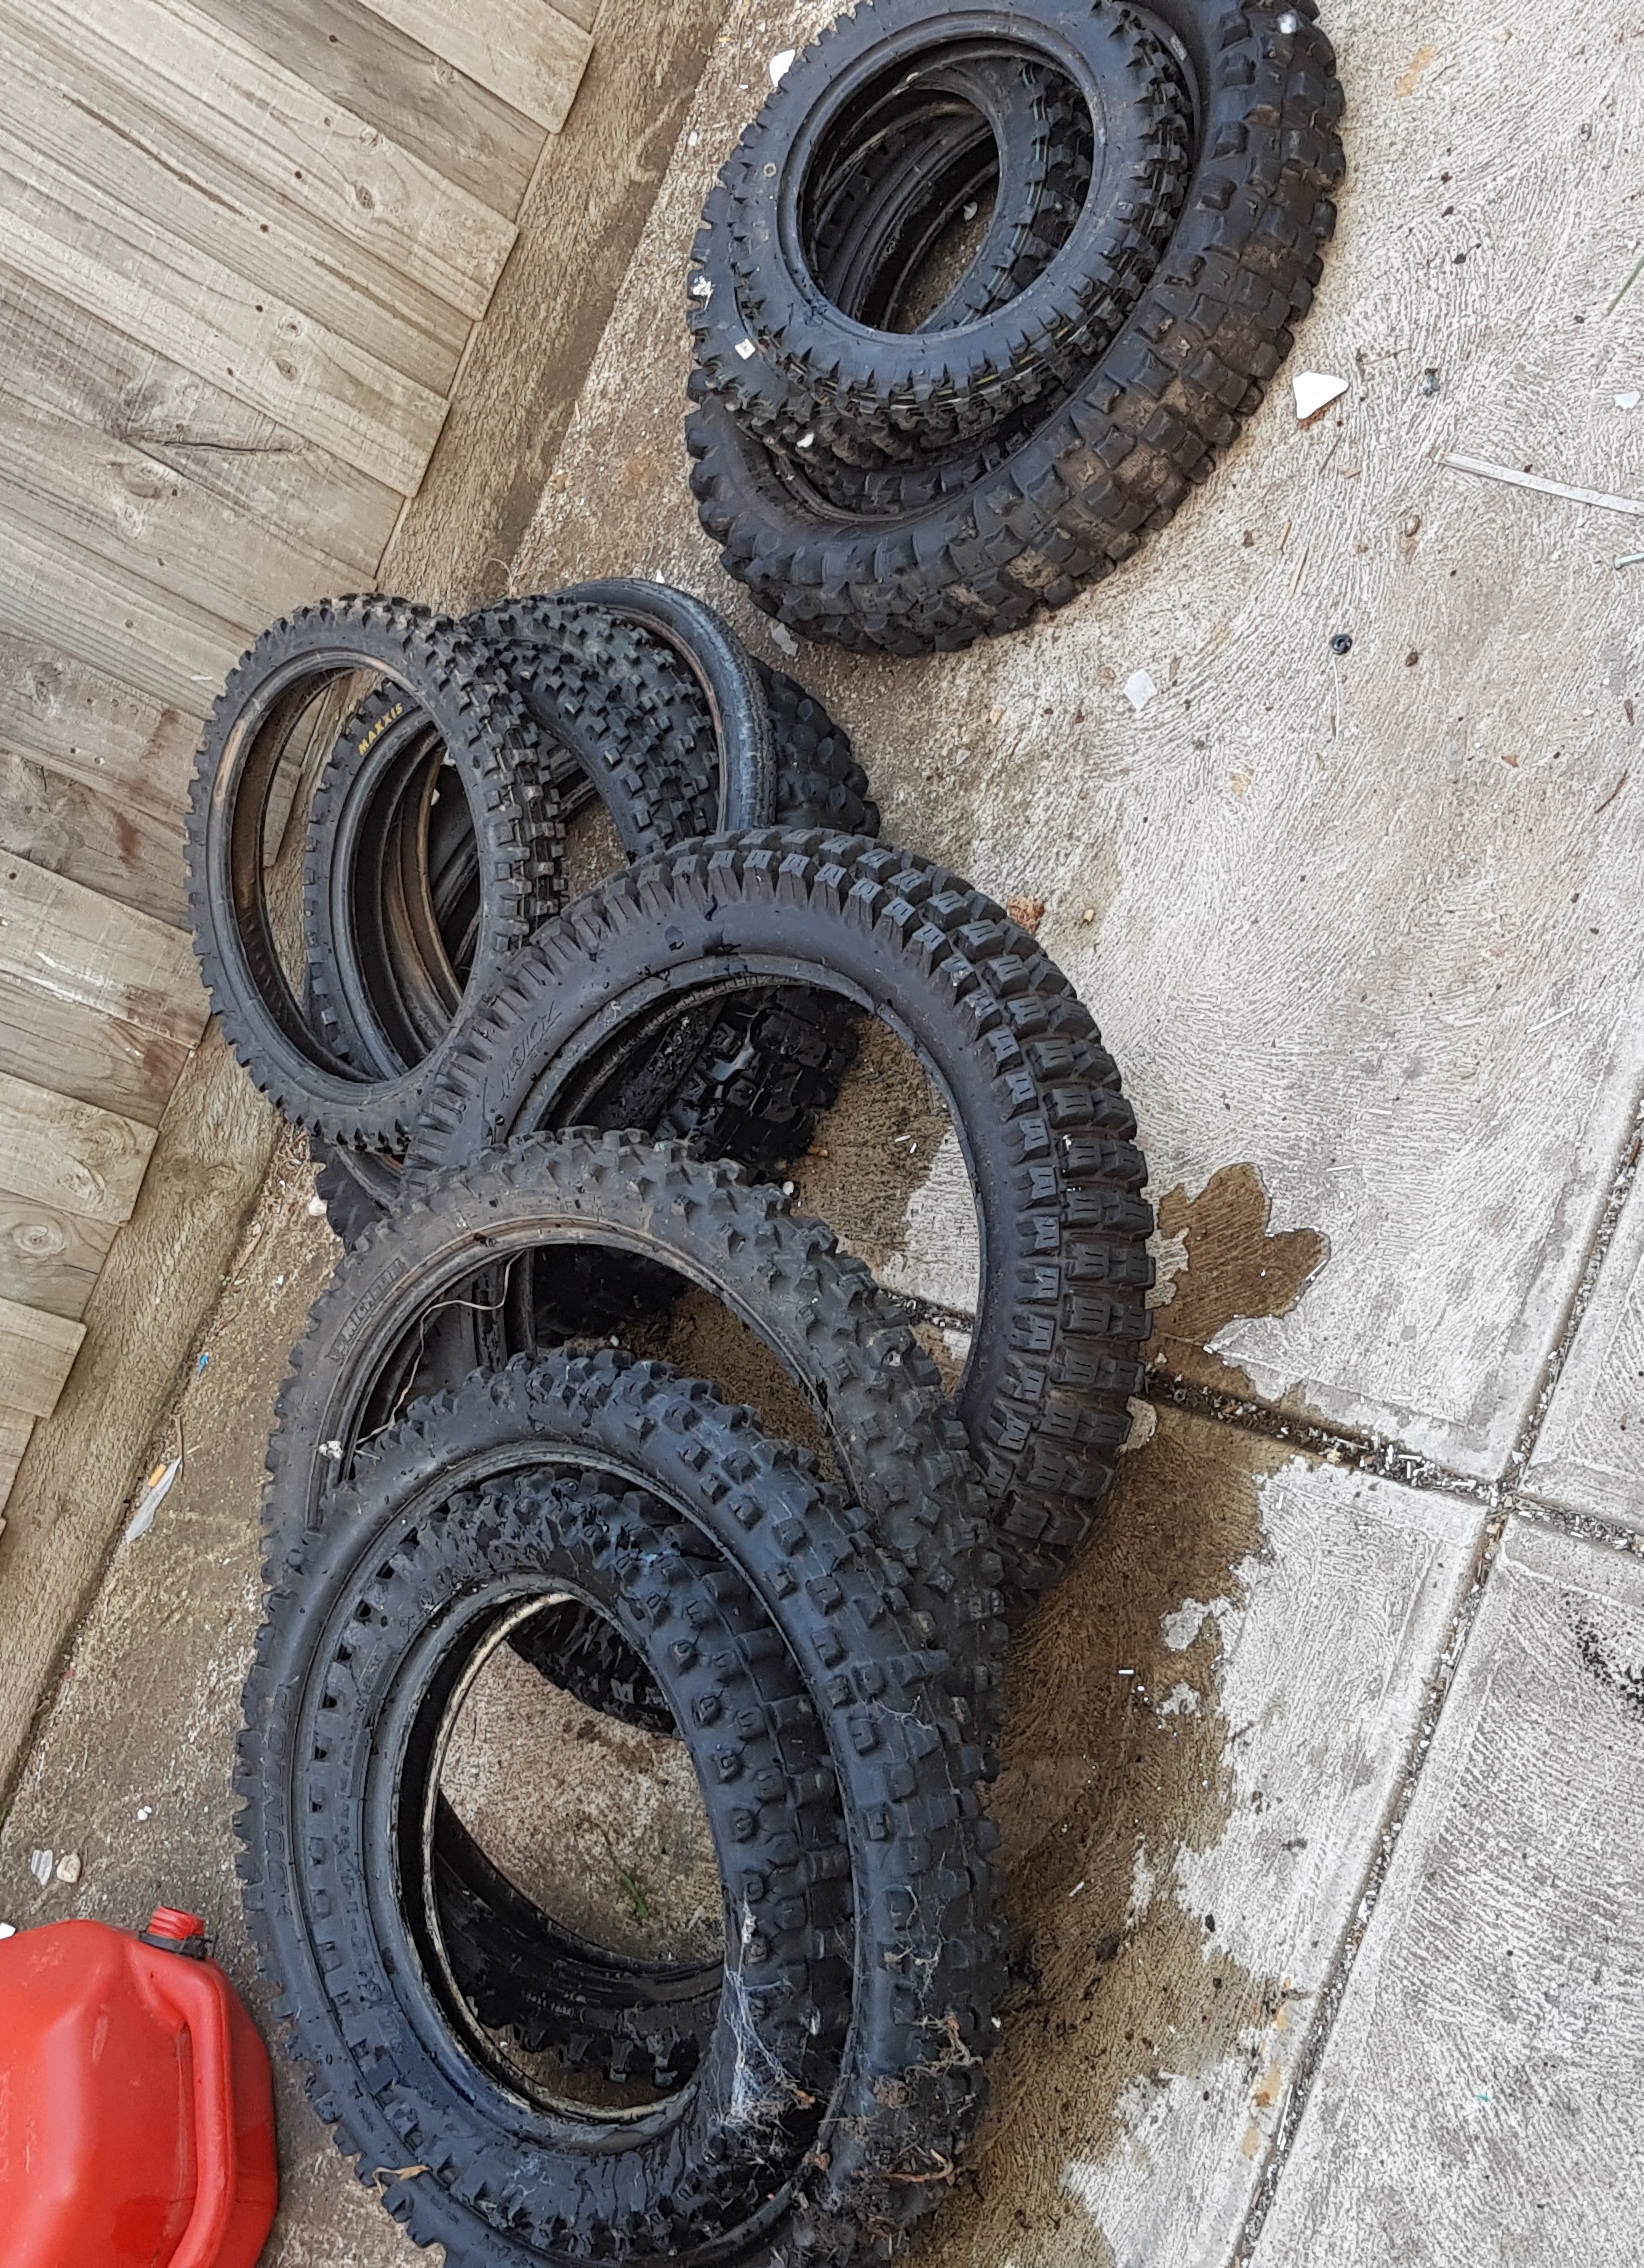 Various dirt bike tyres various diameters and widths